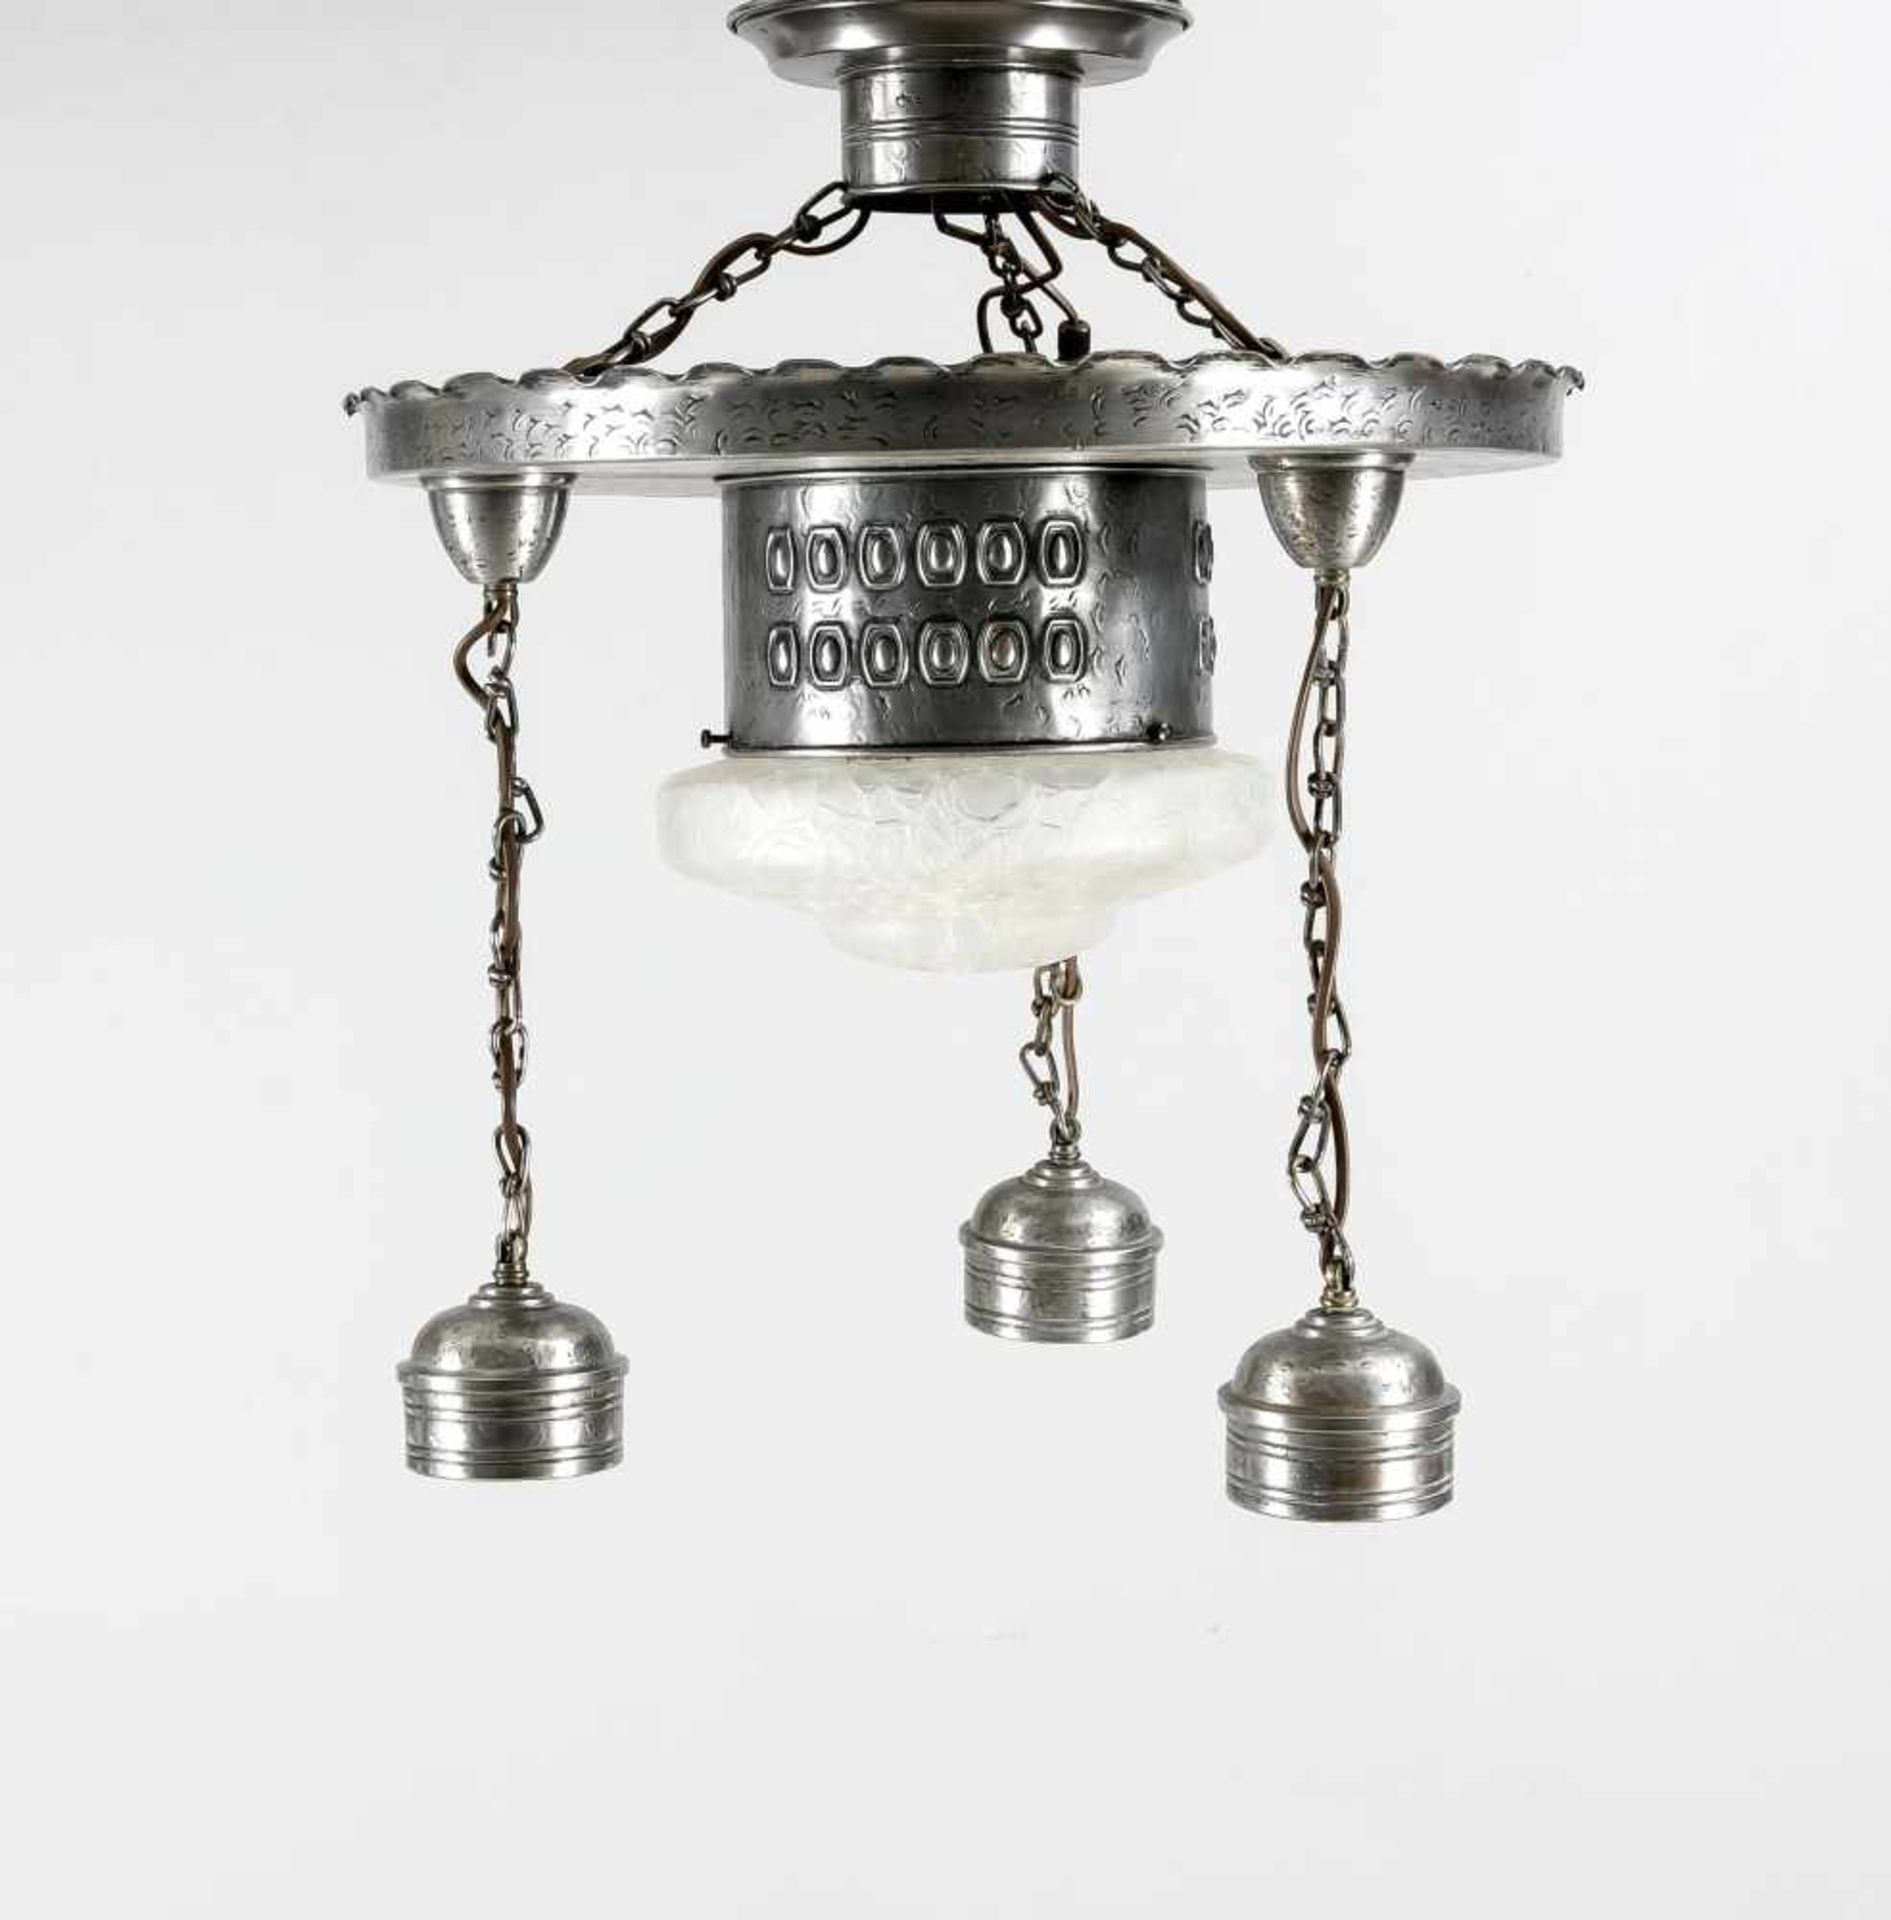 Art and Crafts-Deckenlampe um 1920, geprägtes Eisenblechgestell mit drei Lampenfassungenan Ketten,